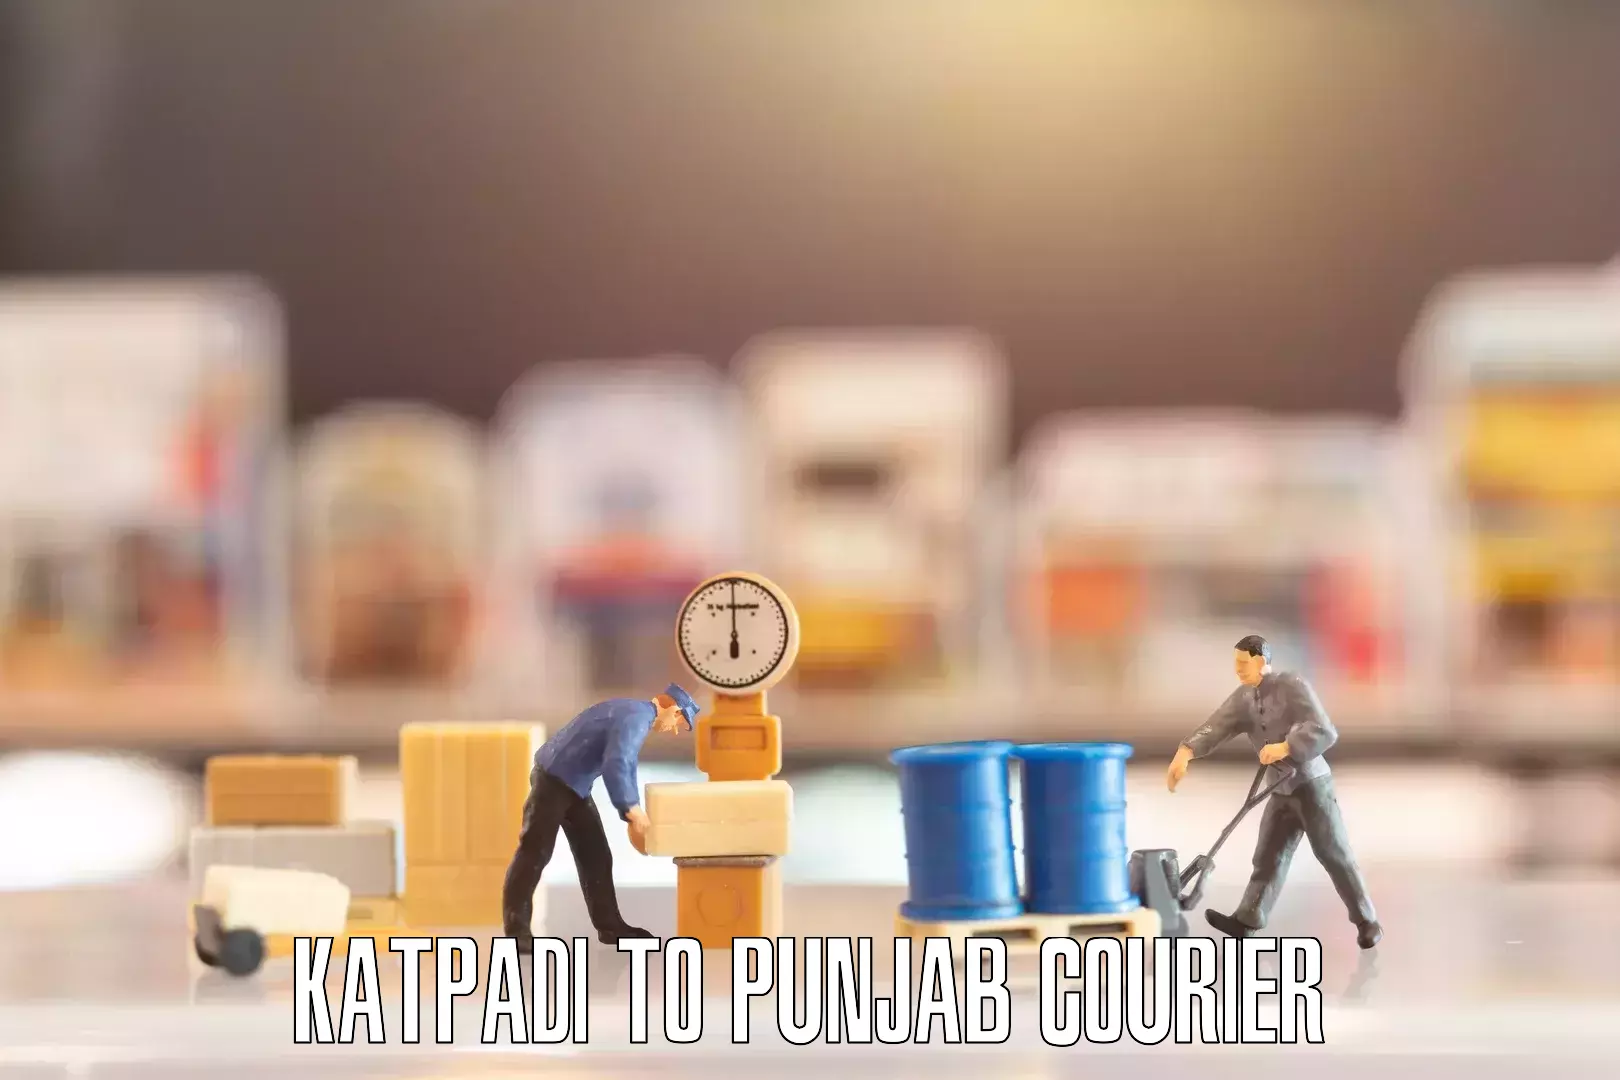 Personalized moving and storage Katpadi to Punjab